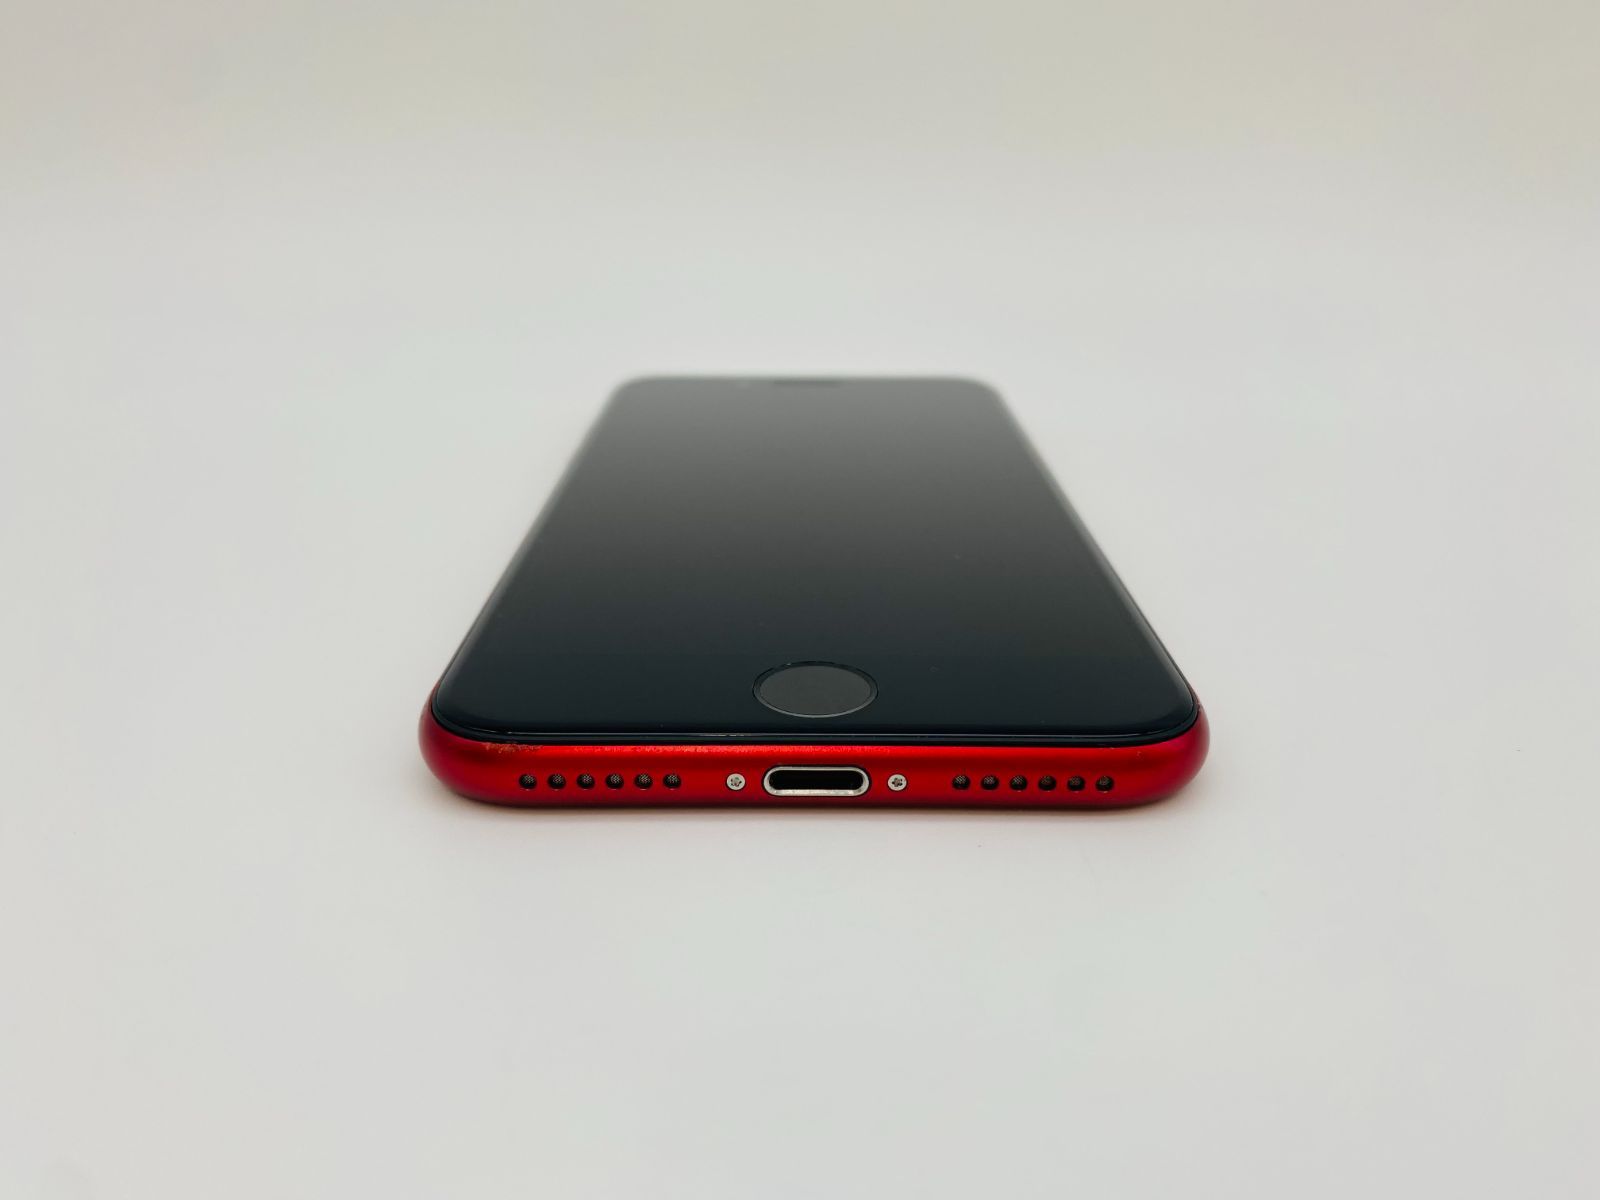 046 iPhone SE 第2世代 64GB レッド/シムフリー/新品バッテリー100